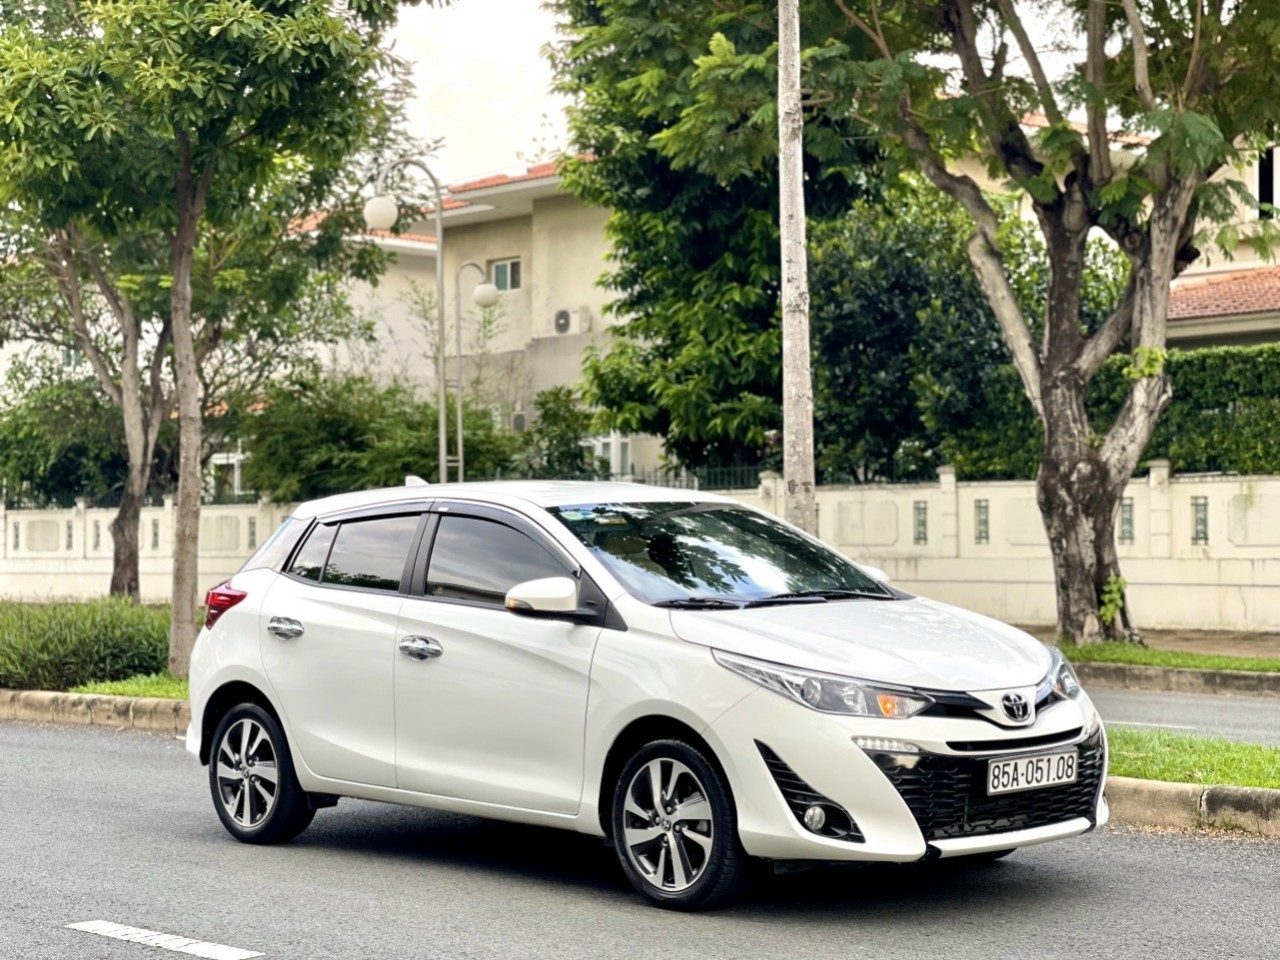 Hình Ảnh Toyota Yaris G 2019 màu trắng 6